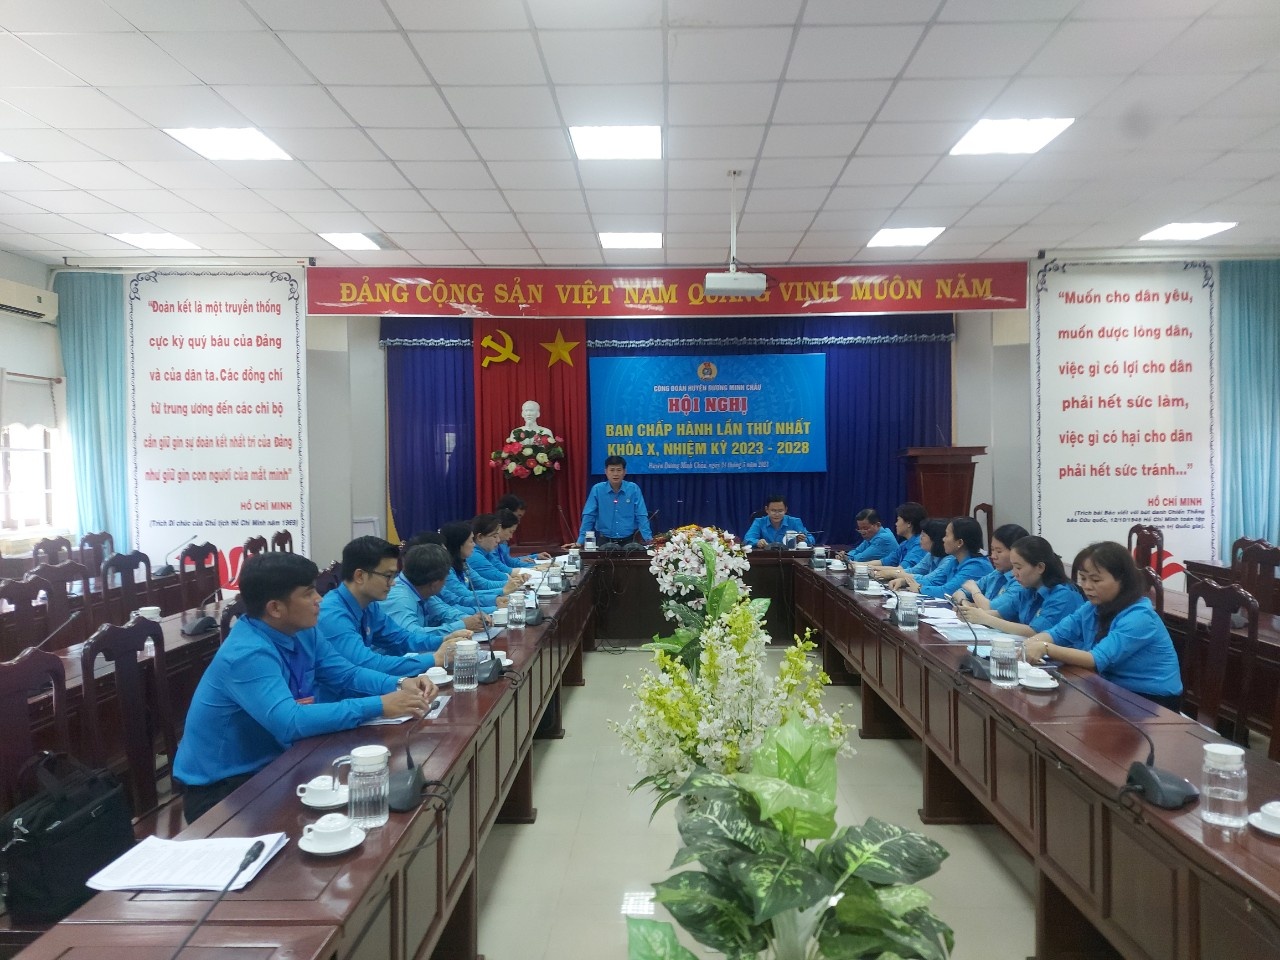 Tổ chức thành công đại hội điểm Công đoàn huyện Dương Minh Châu, Tây Ninh